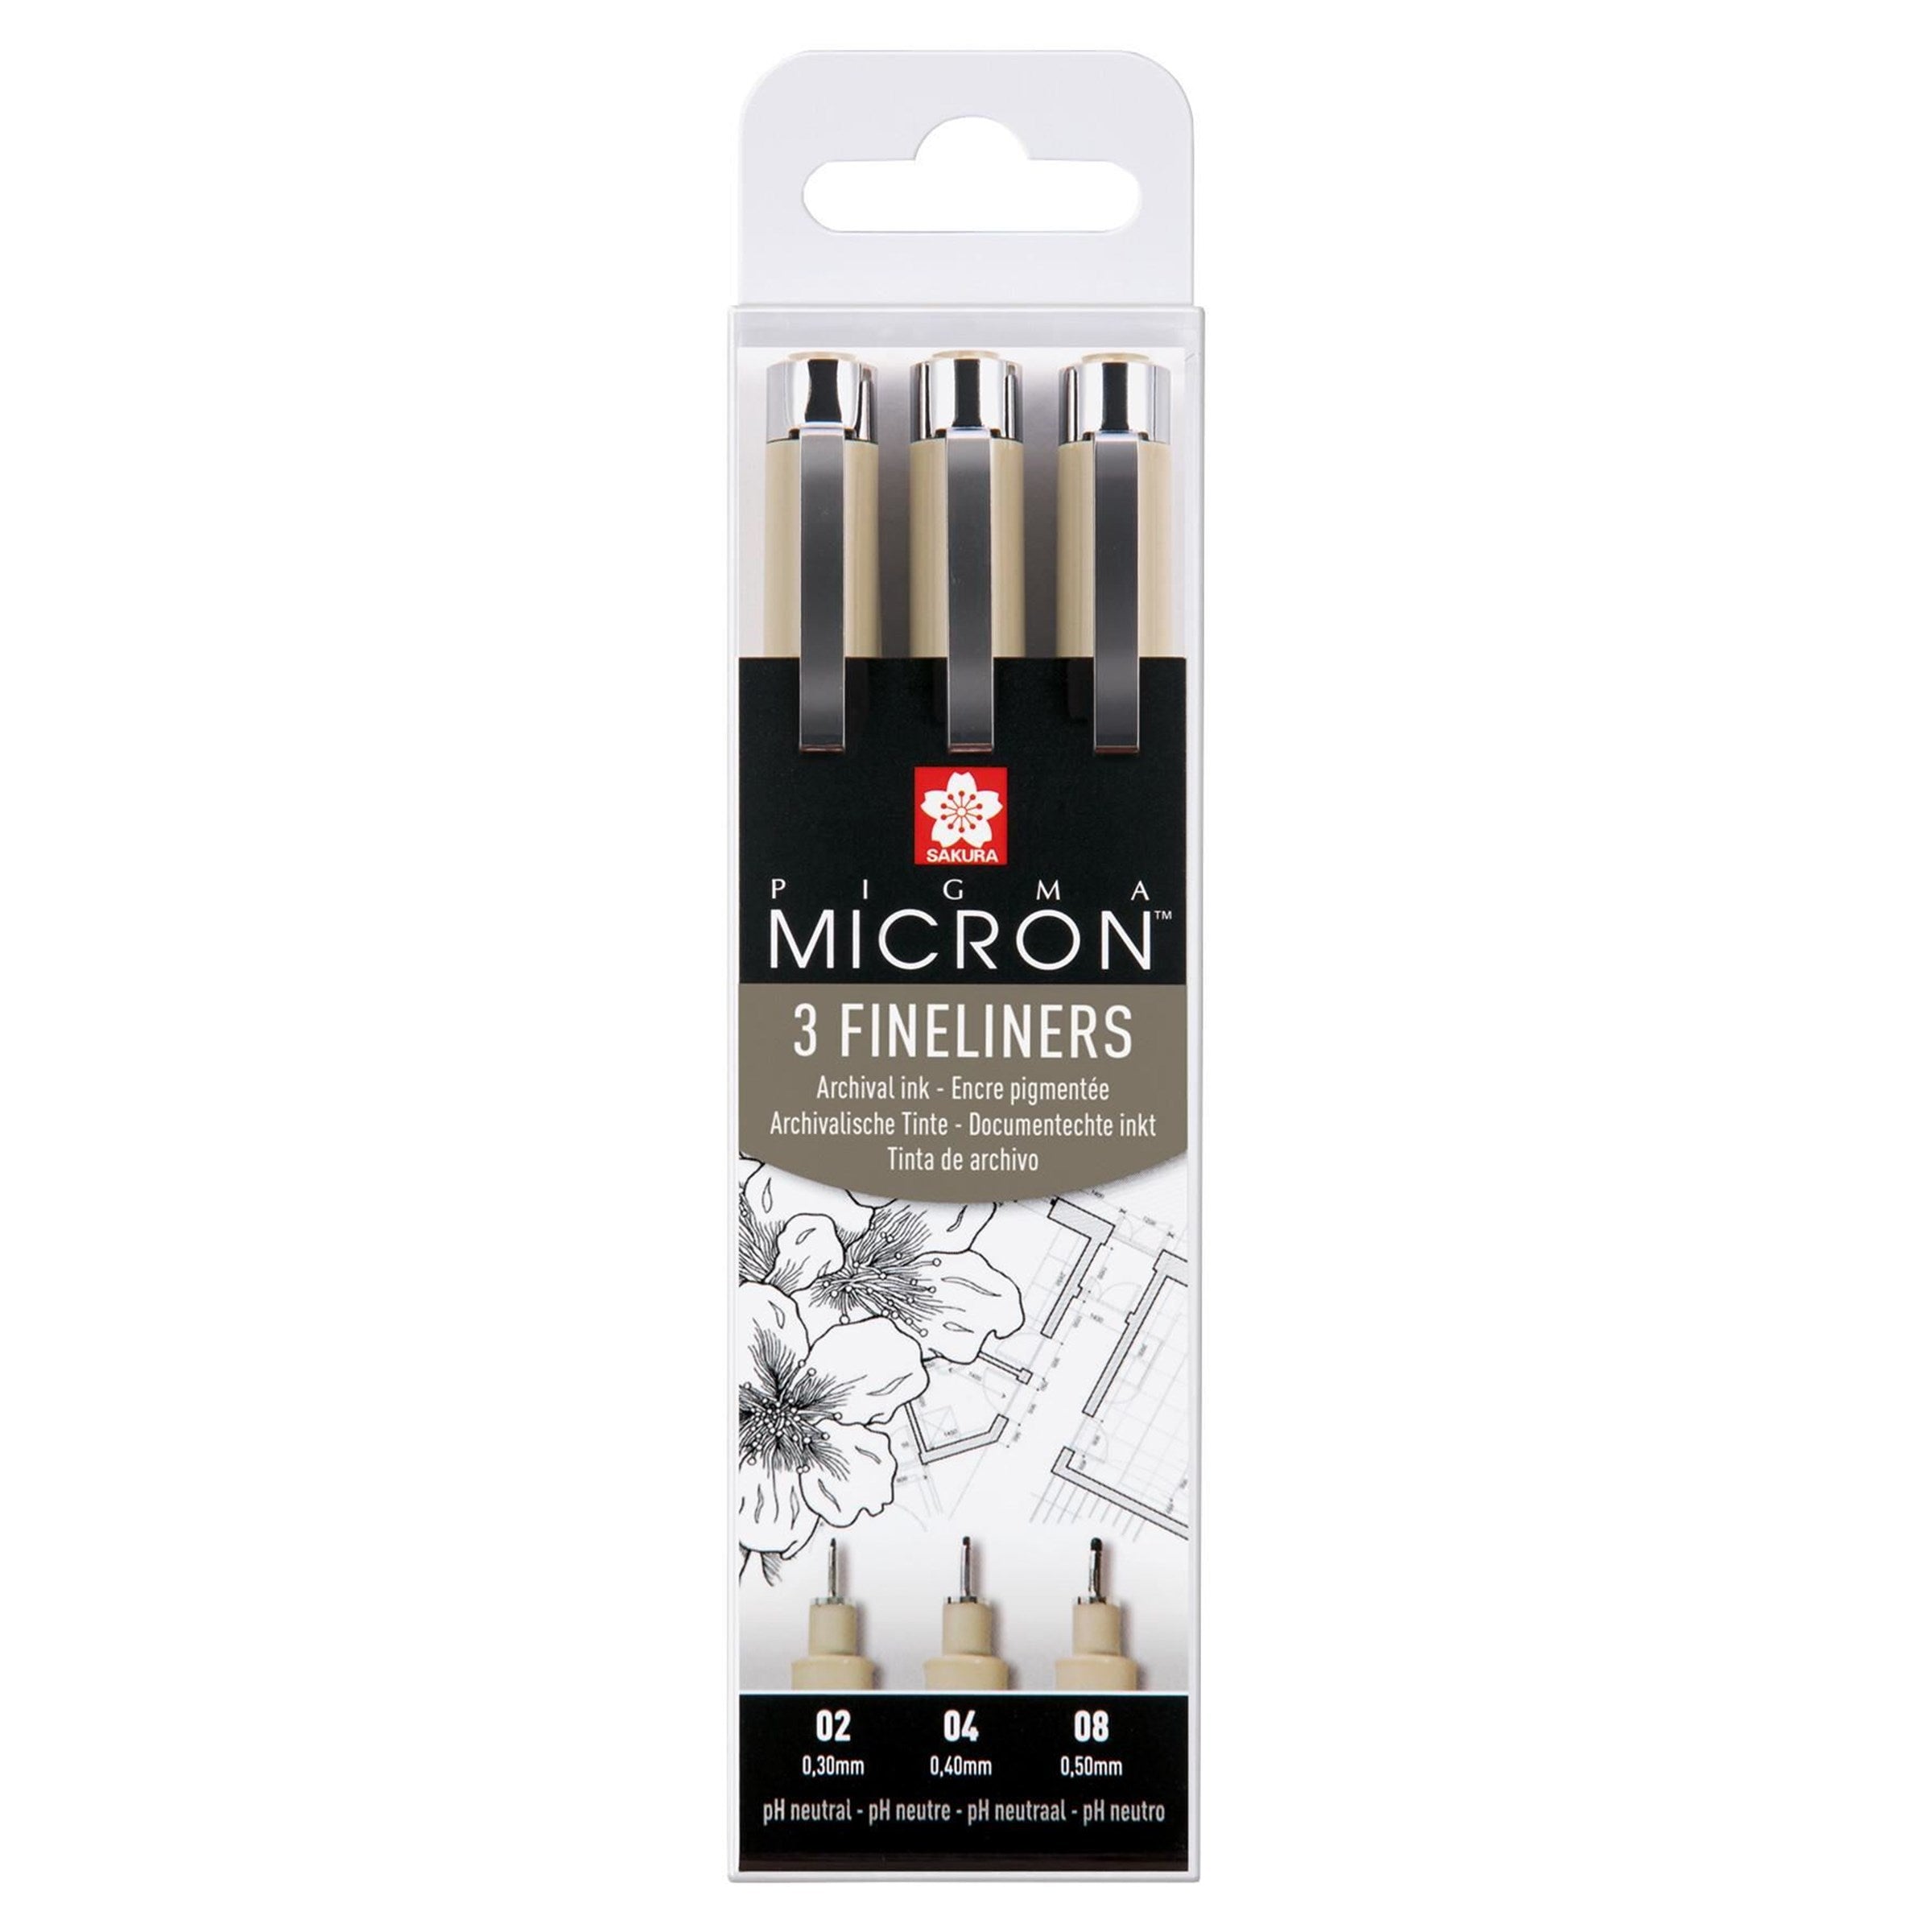 Pigma Micron fineliner set | 3 pens, 0.3 mm + 0.4 mm + 0.5 mm, black